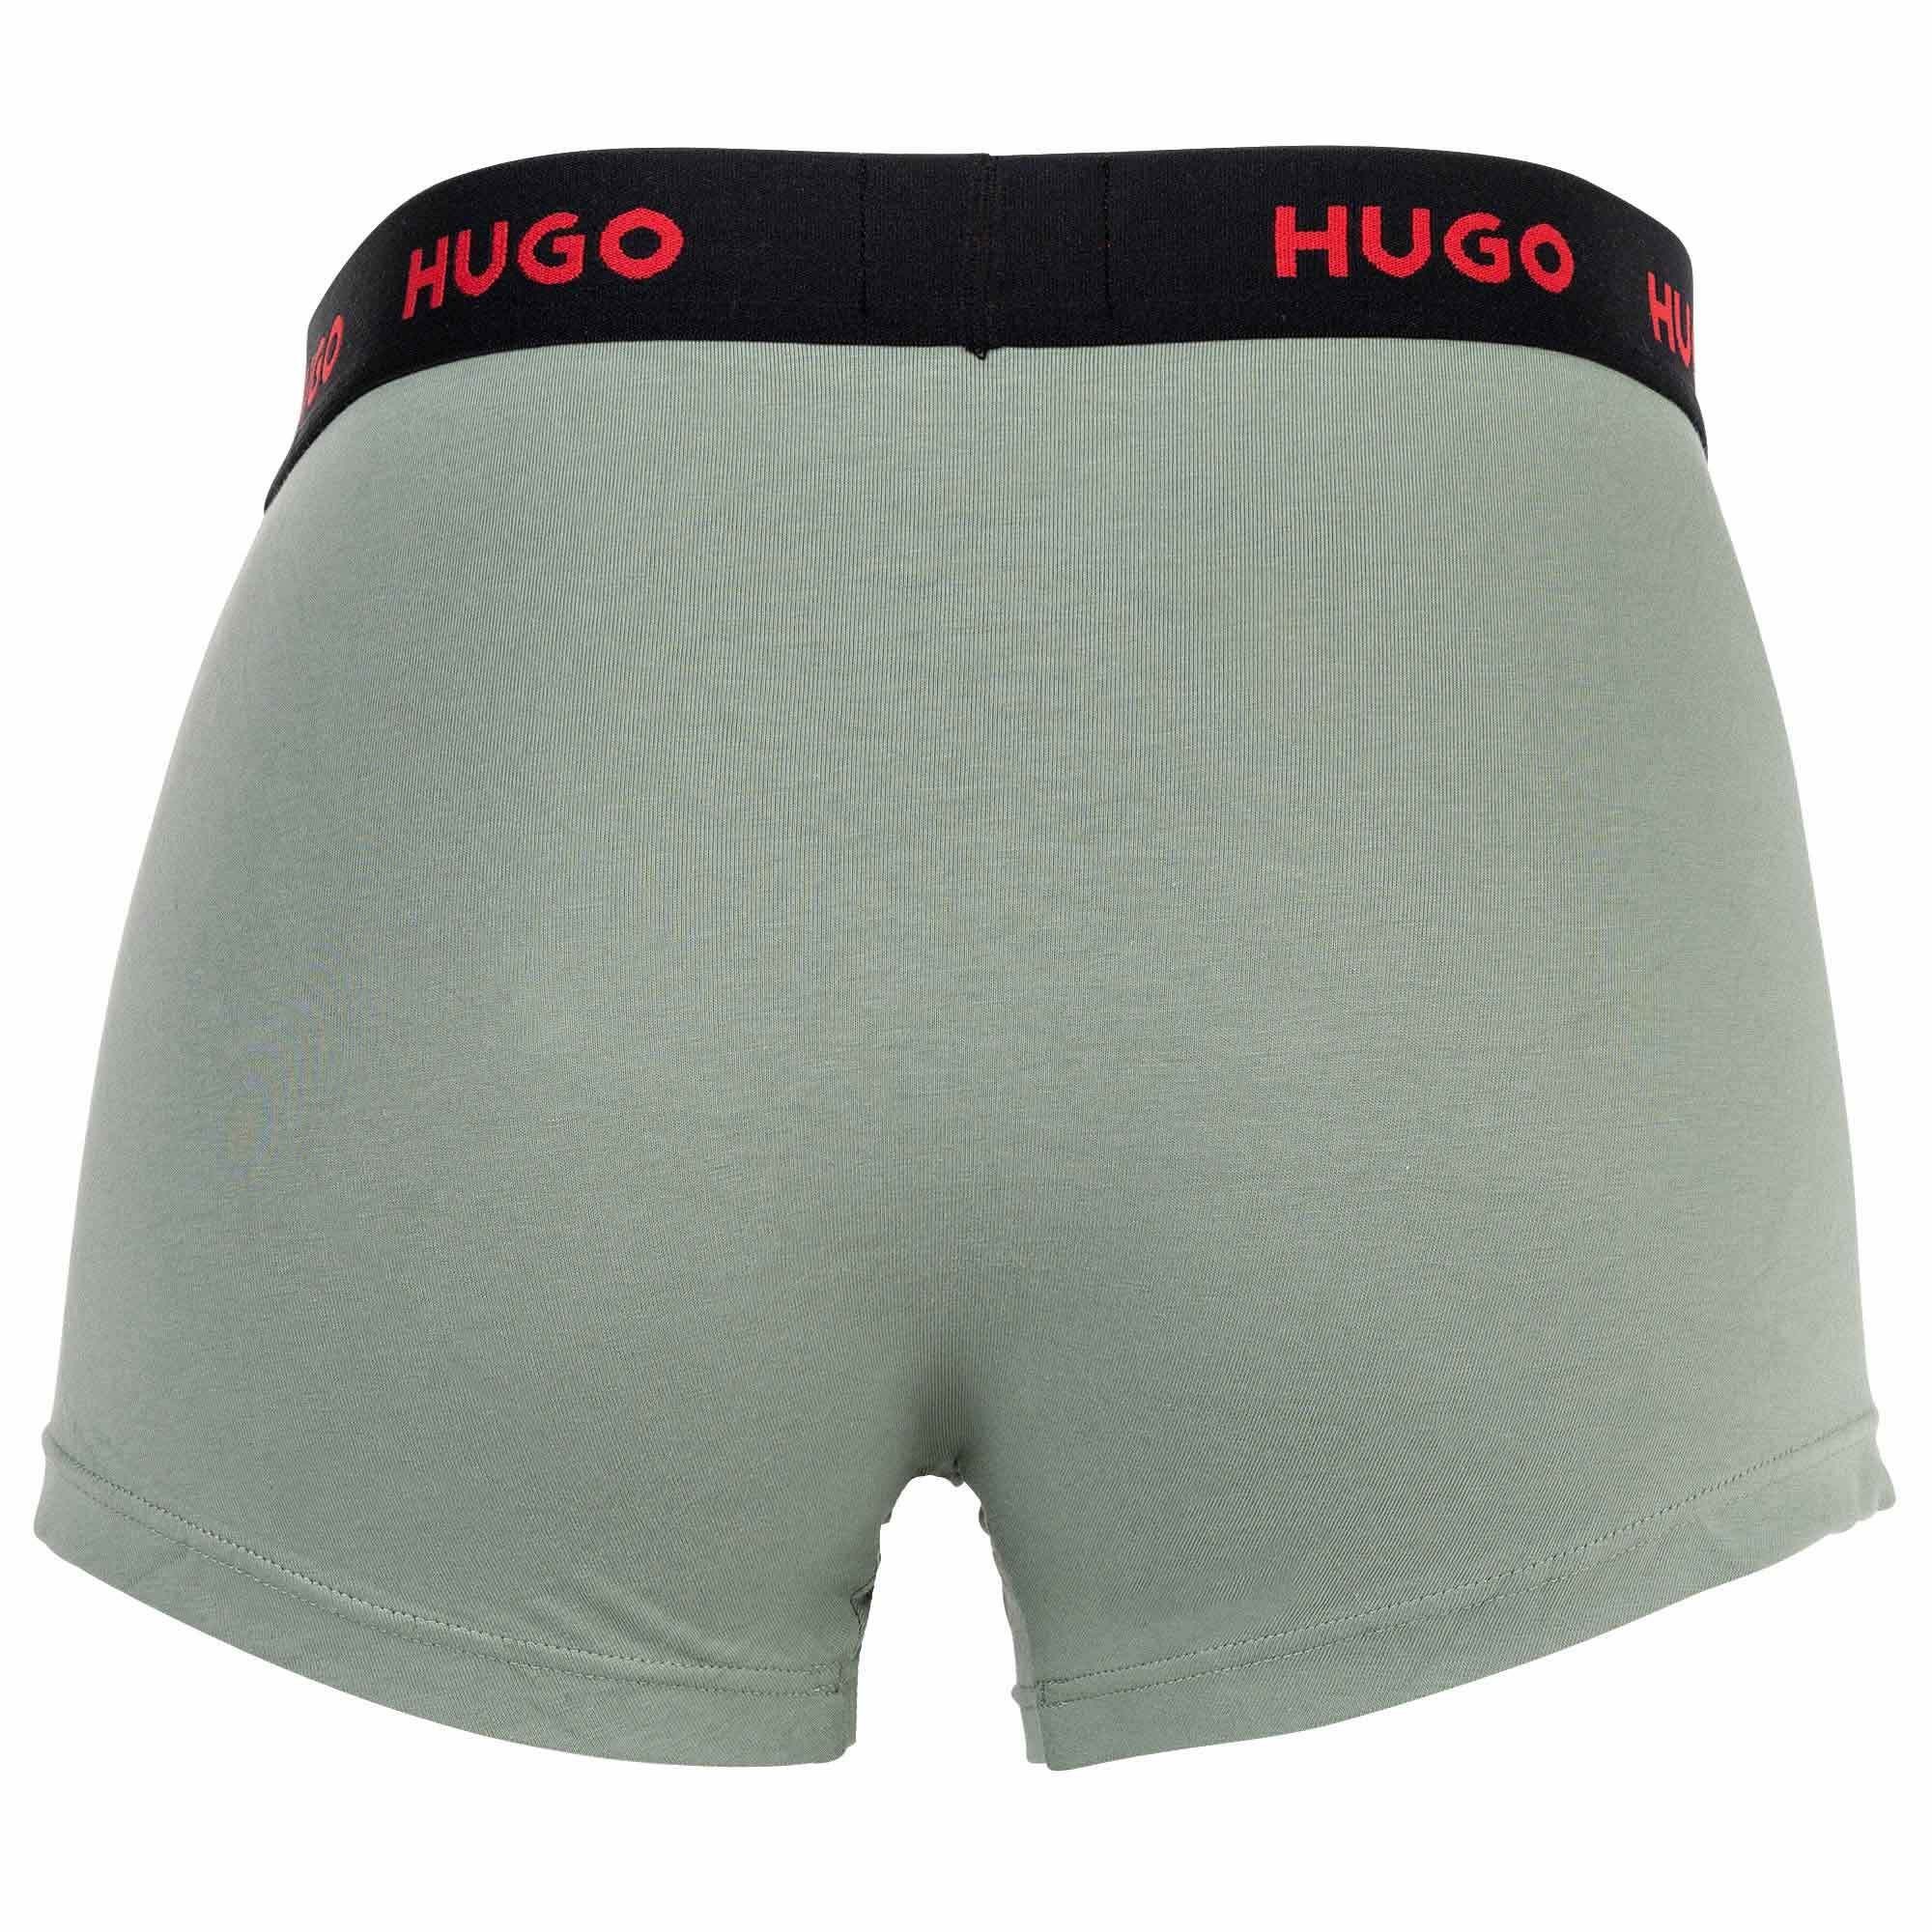 Boxer Boxer Trunks Triplet Grau/Blau 3er Herren HUGO - Shorts, Pack